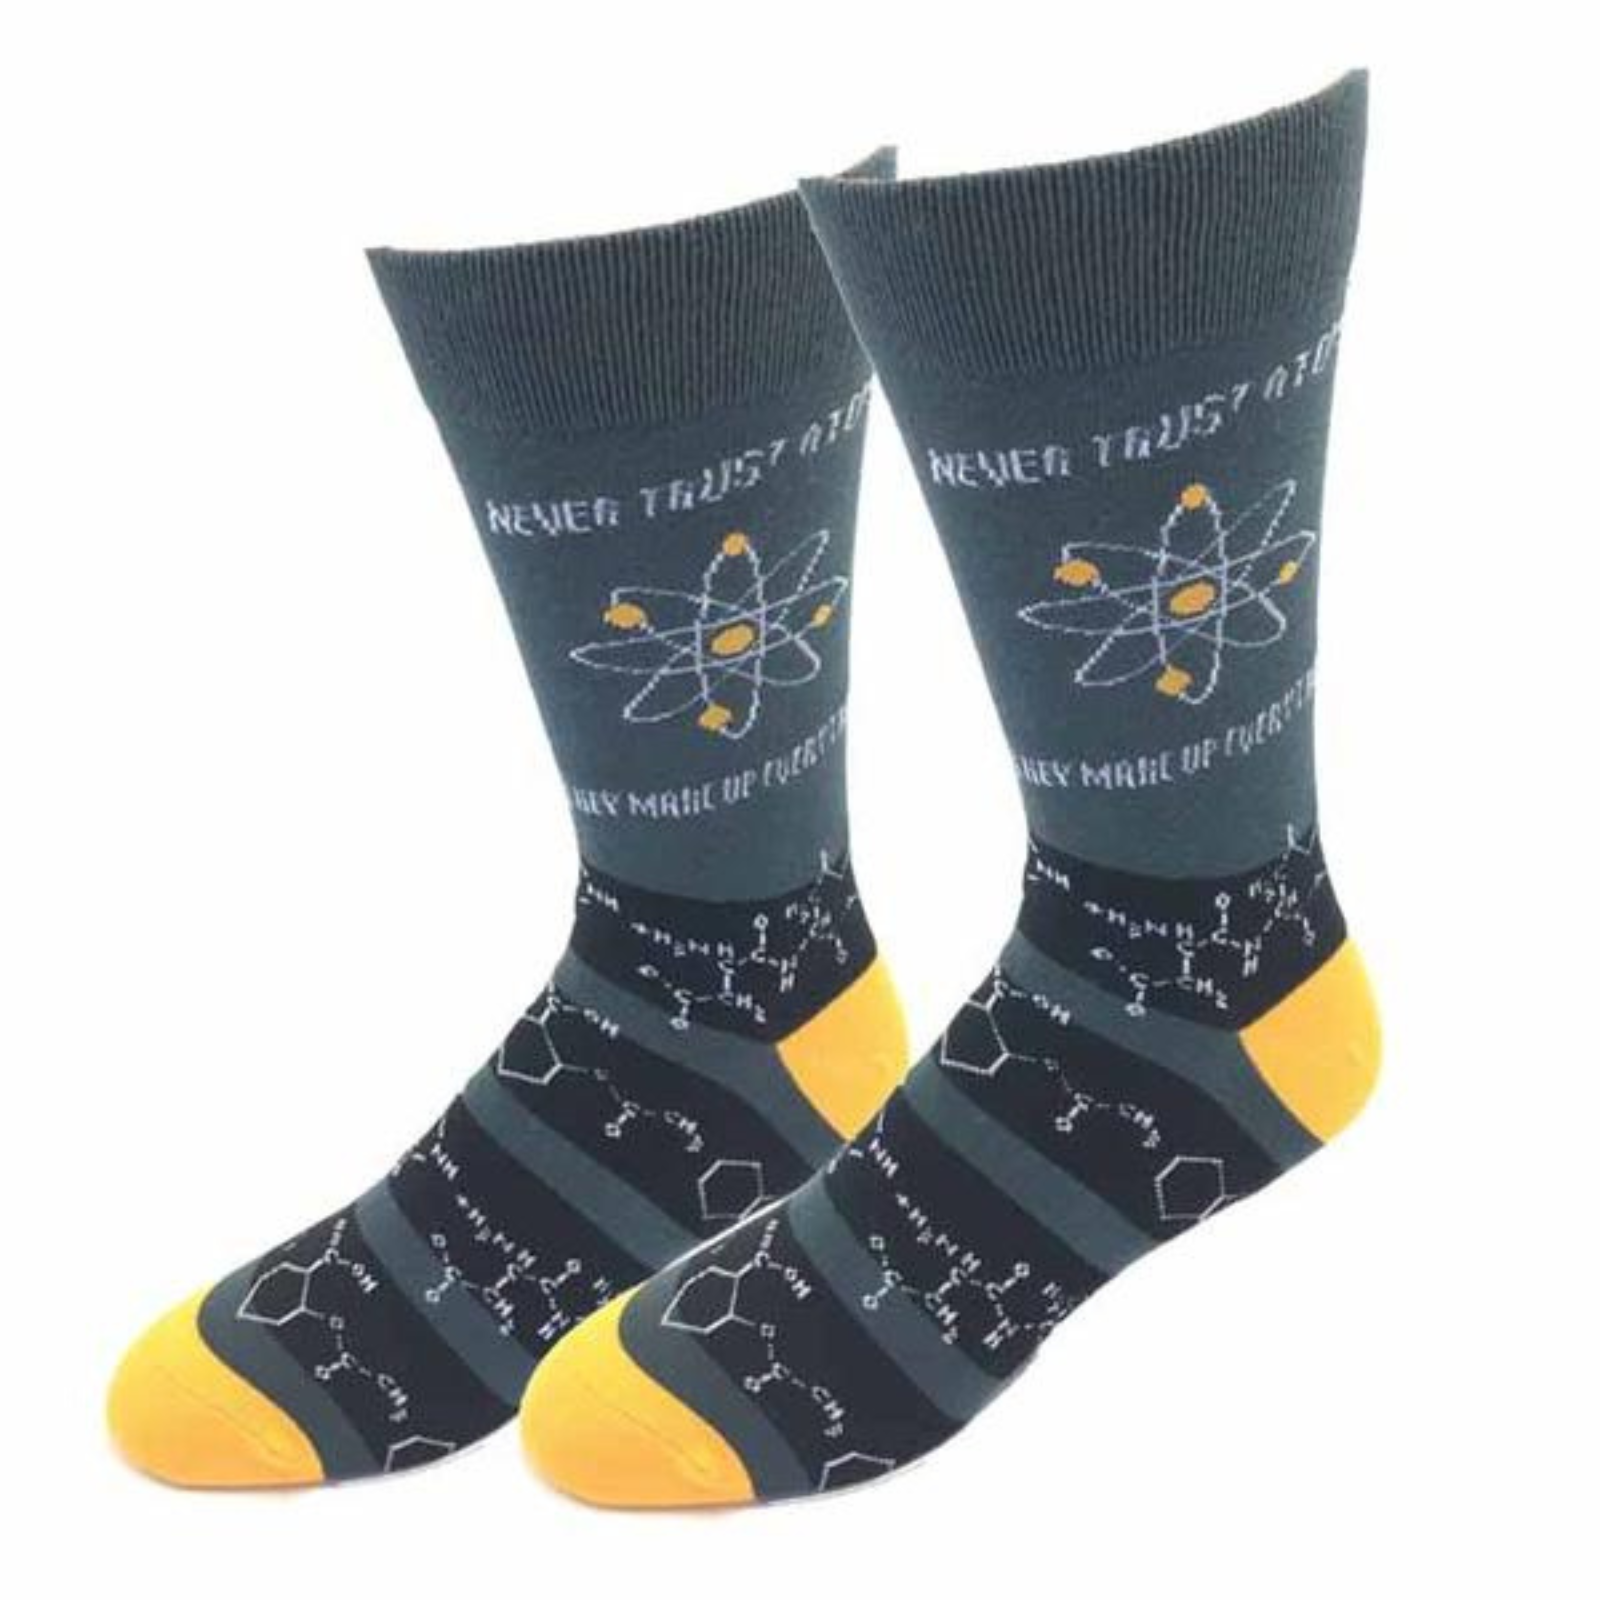 Sock Harbor Never Trust Atoms men's sock featuring gray sock with Never Trust Atoms and chemical composition figures